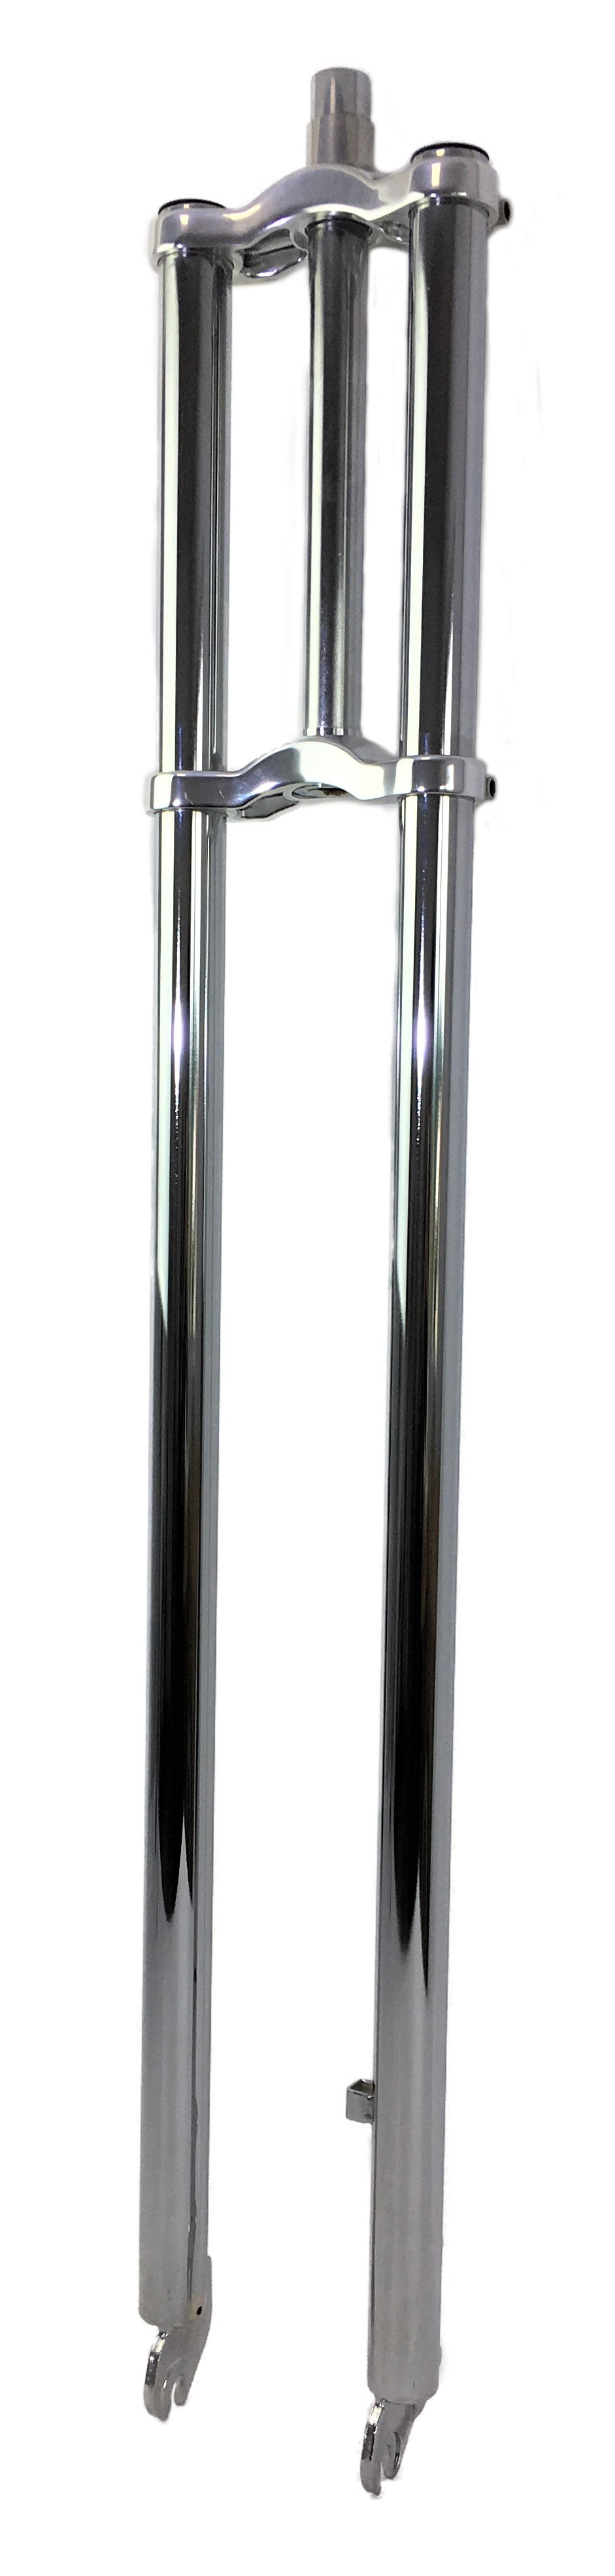 Doppelbrückengabel, edel und supercool lange 930 mm